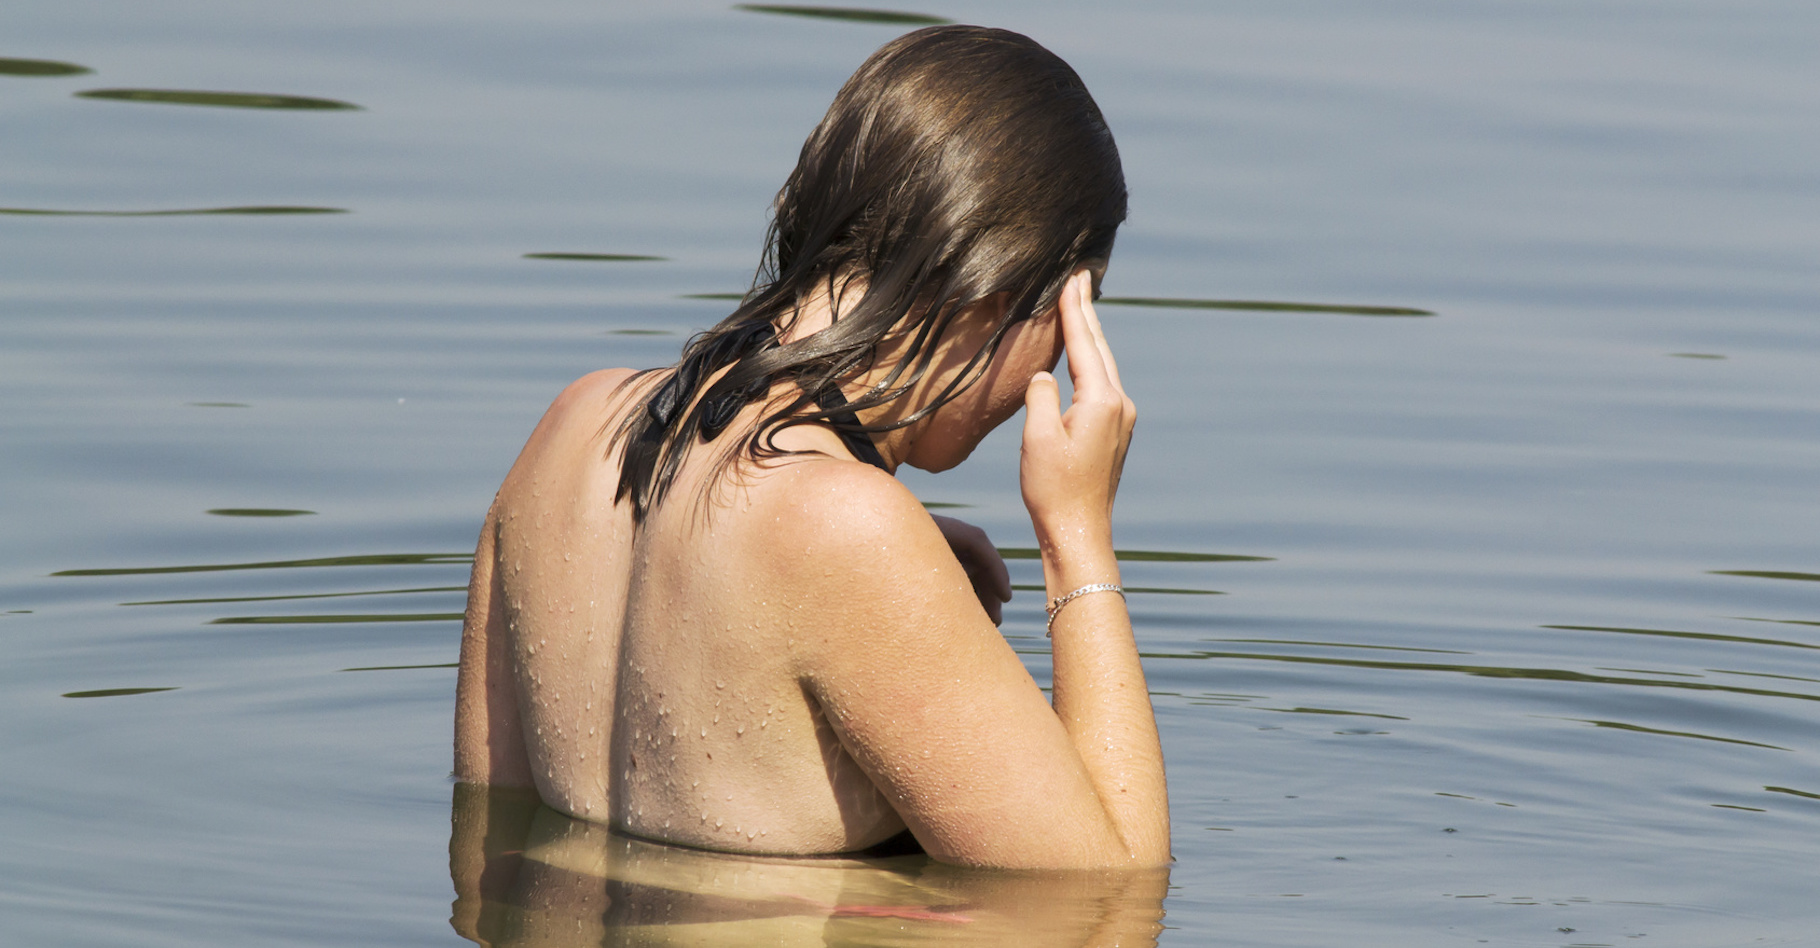 À l’heure de la baignade, les enfants et les personnes âgées risquent plus l’hydrocution (ou choc thermique). © brimeux, Fotolia